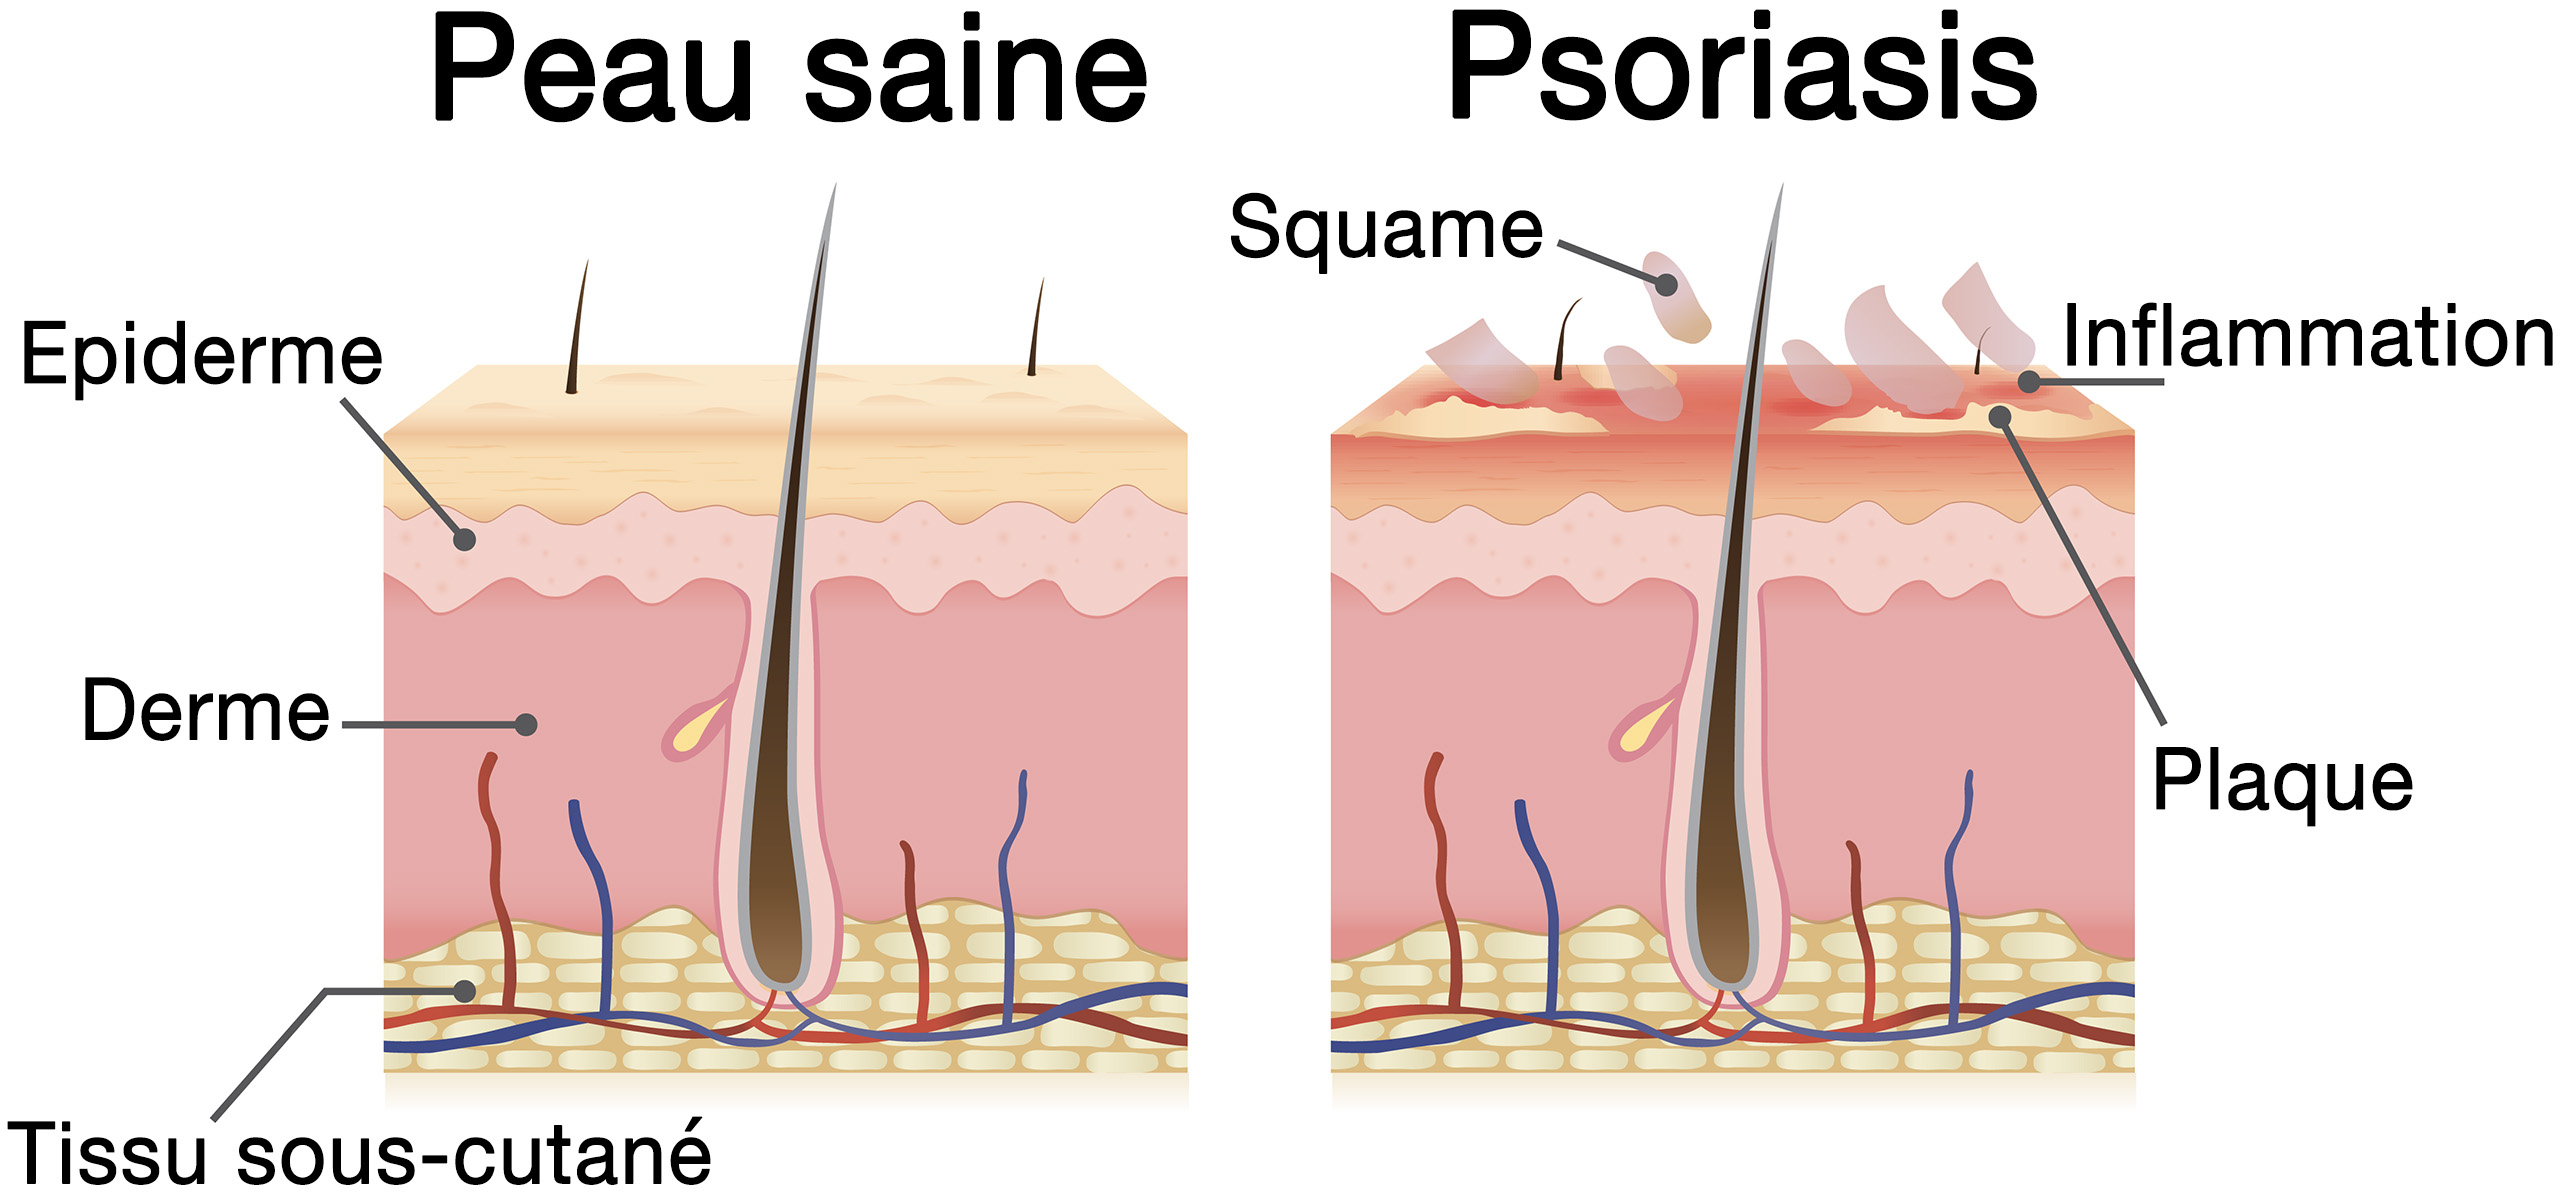 comparaison entre le psoriasis et une peau saine